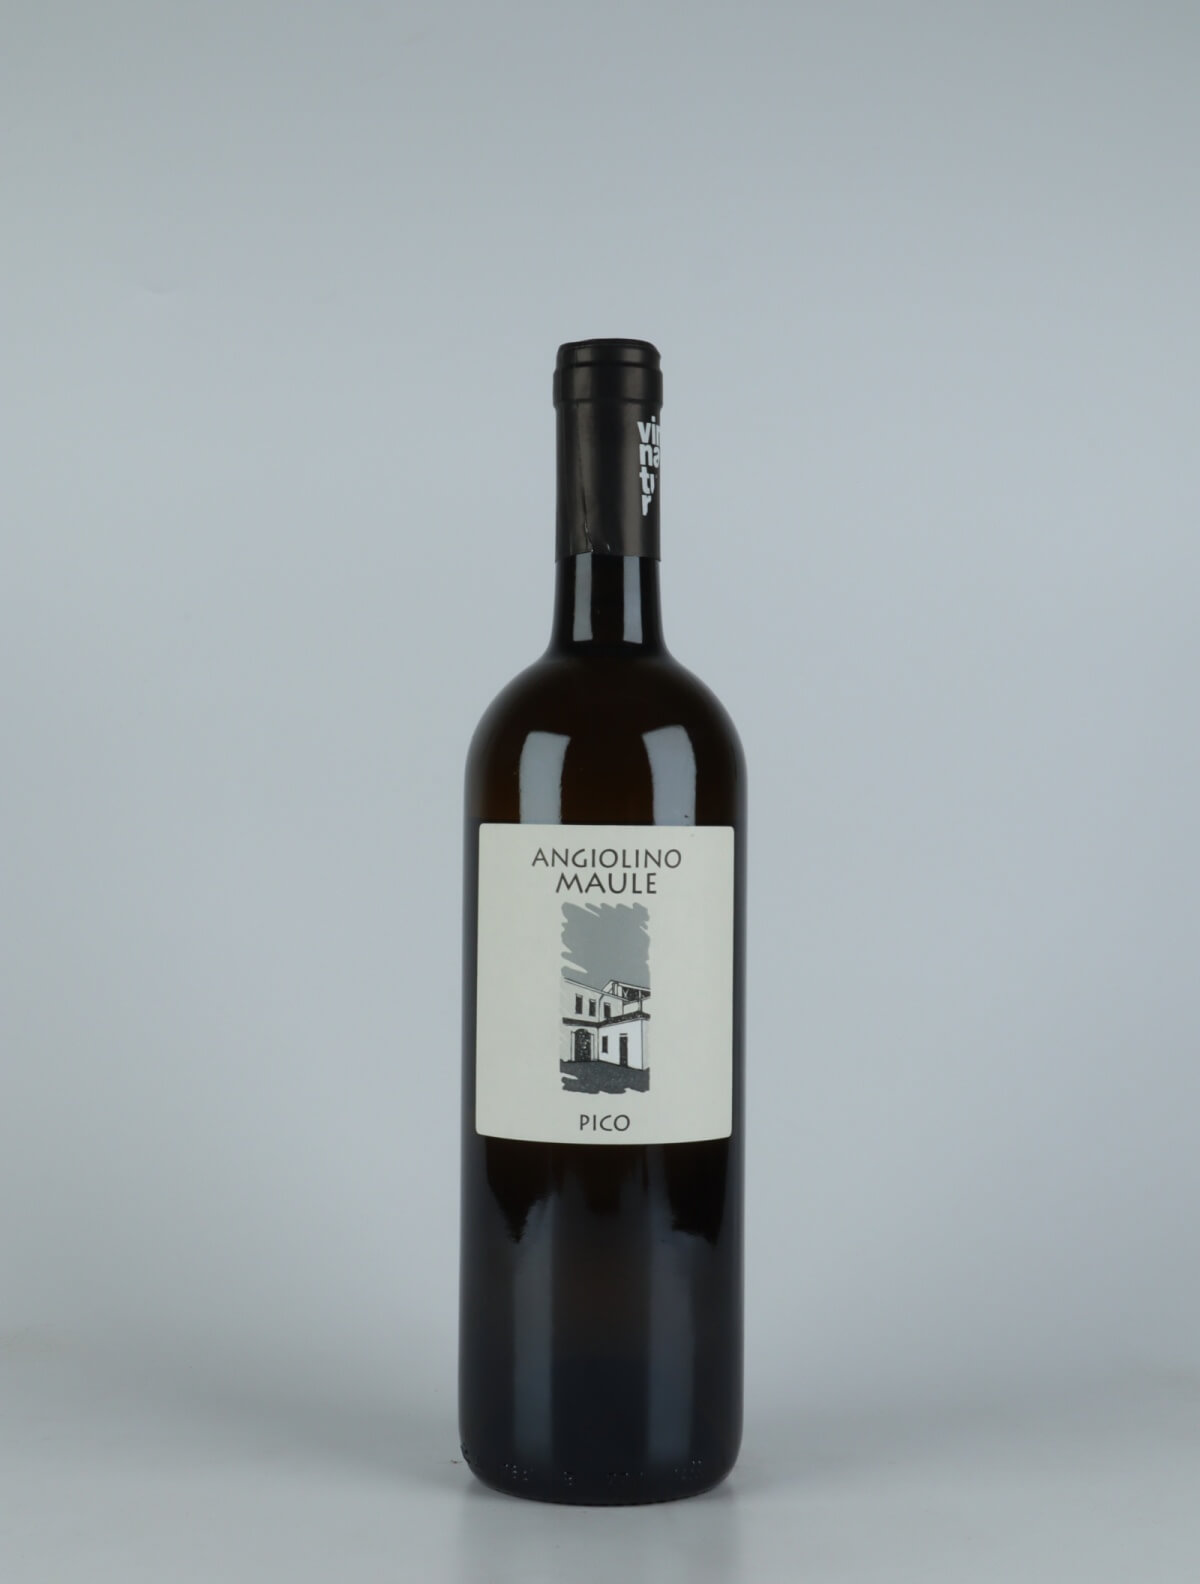 A bottle 2020 Pico White wine from La Biancara di Angiolino Maule, Veneto in Italy